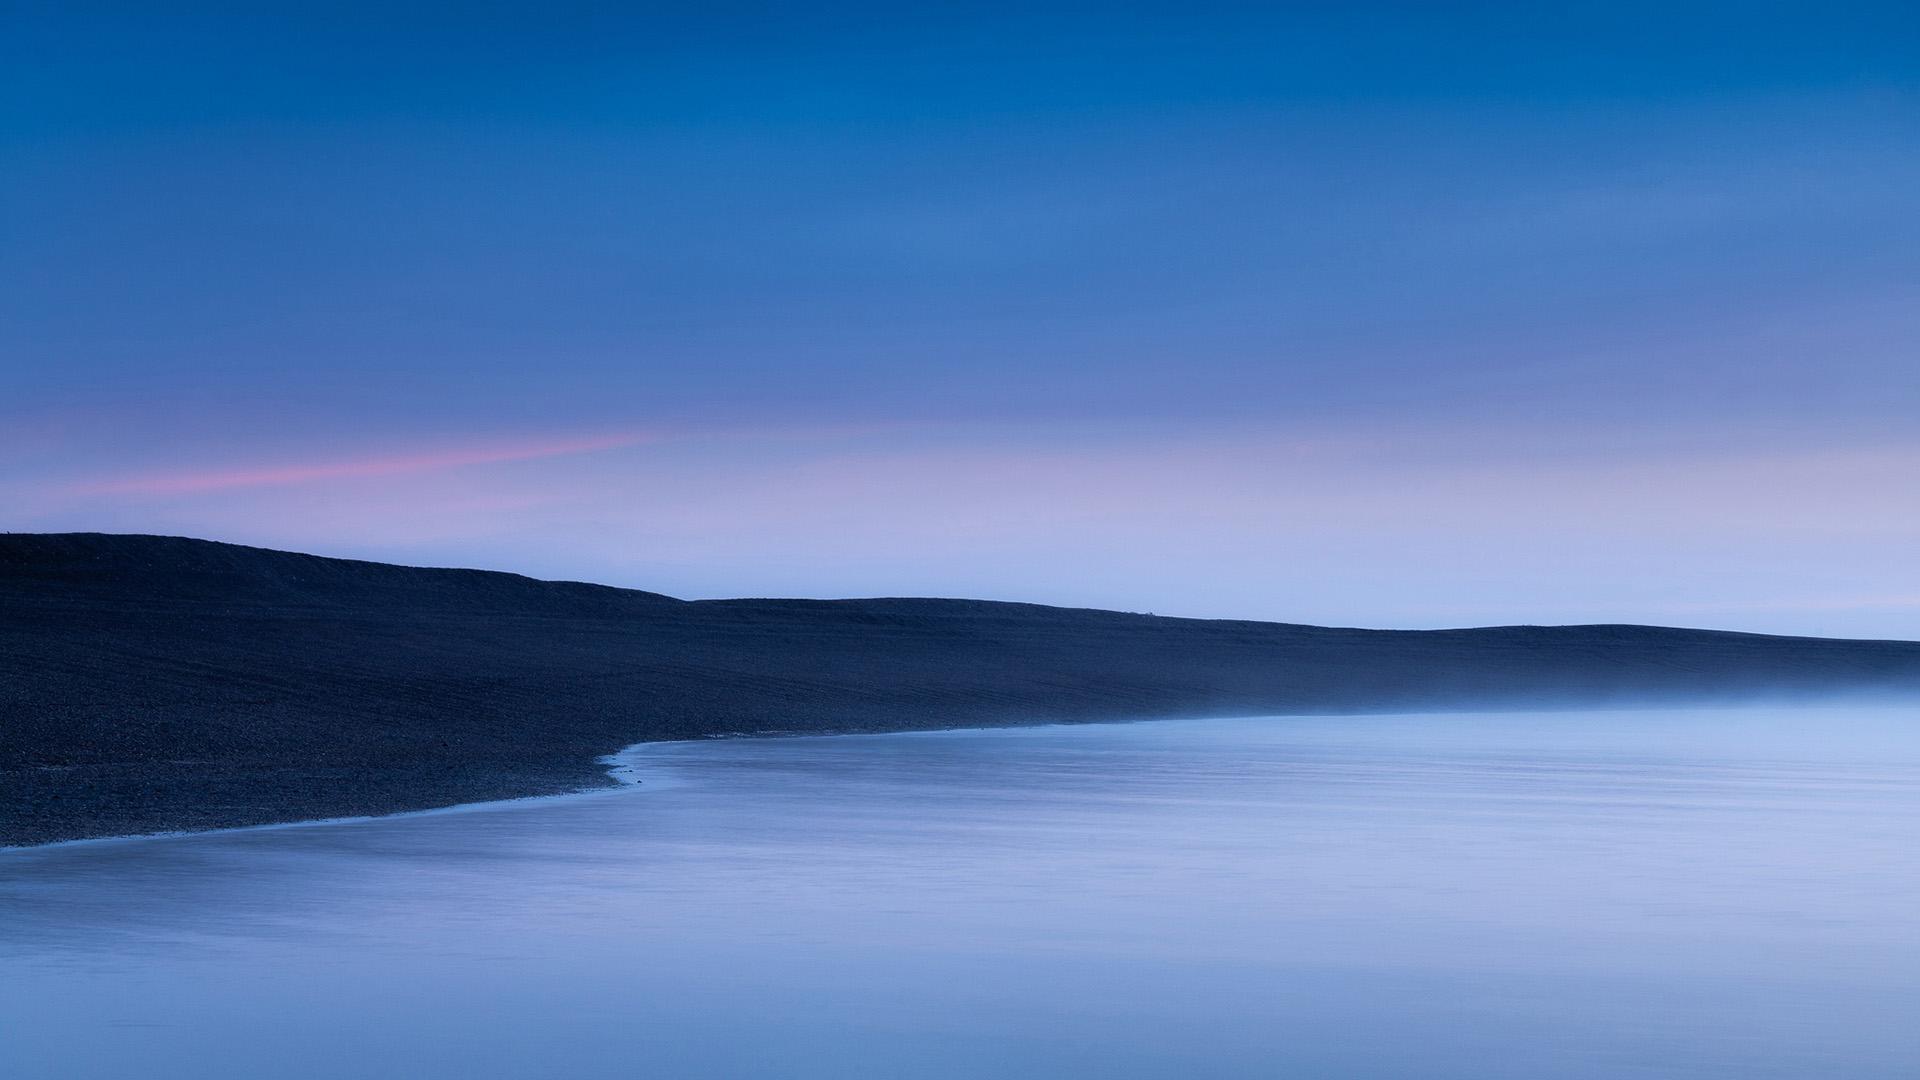 静谧唯美海面风景图片桌面壁纸